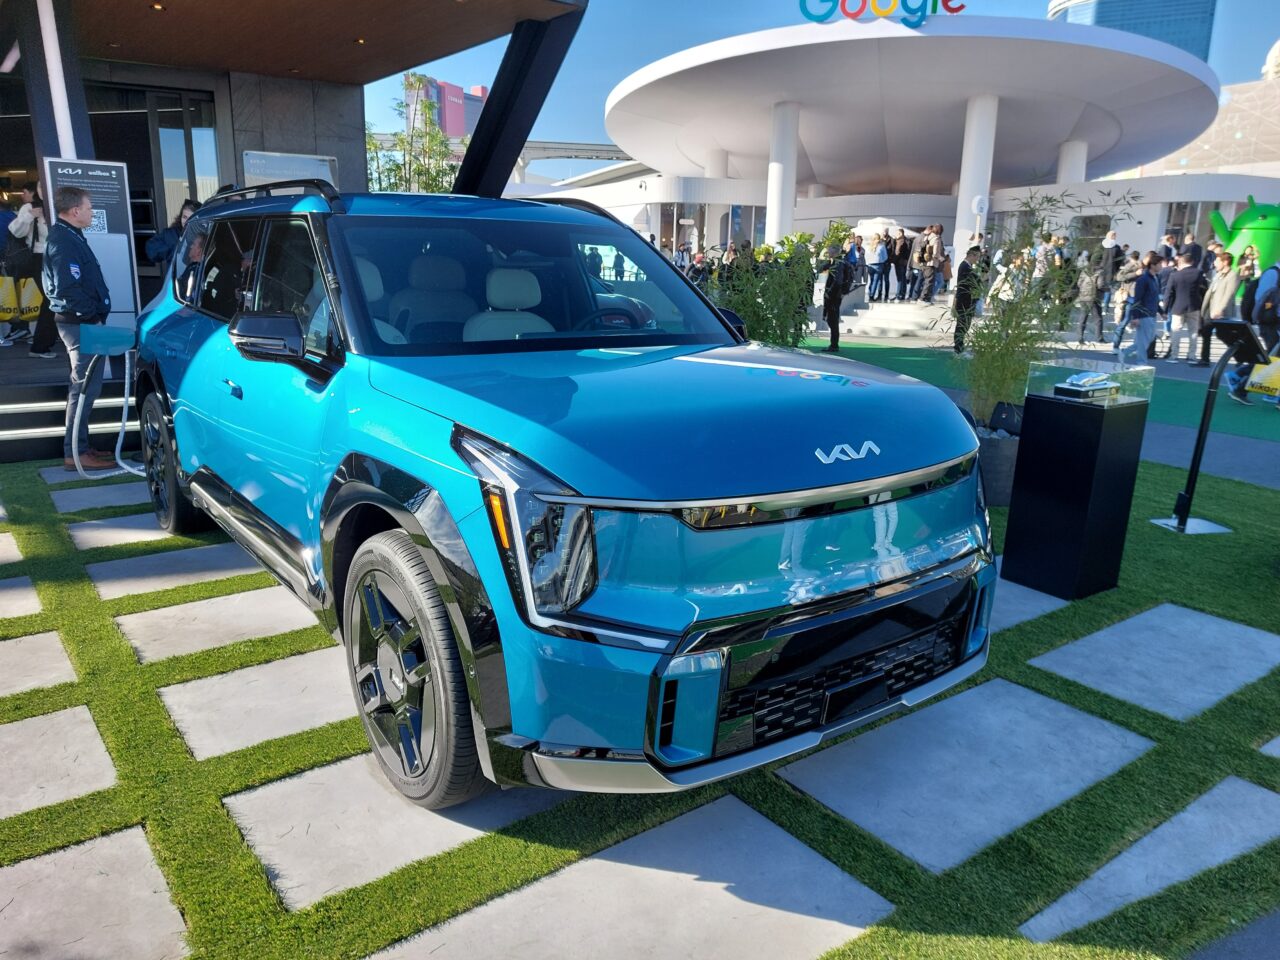 Niebieski samochód elektryczny marki Kia zaparkowany na sztucznej trawie z logo Google w tle i grupą ludzi.